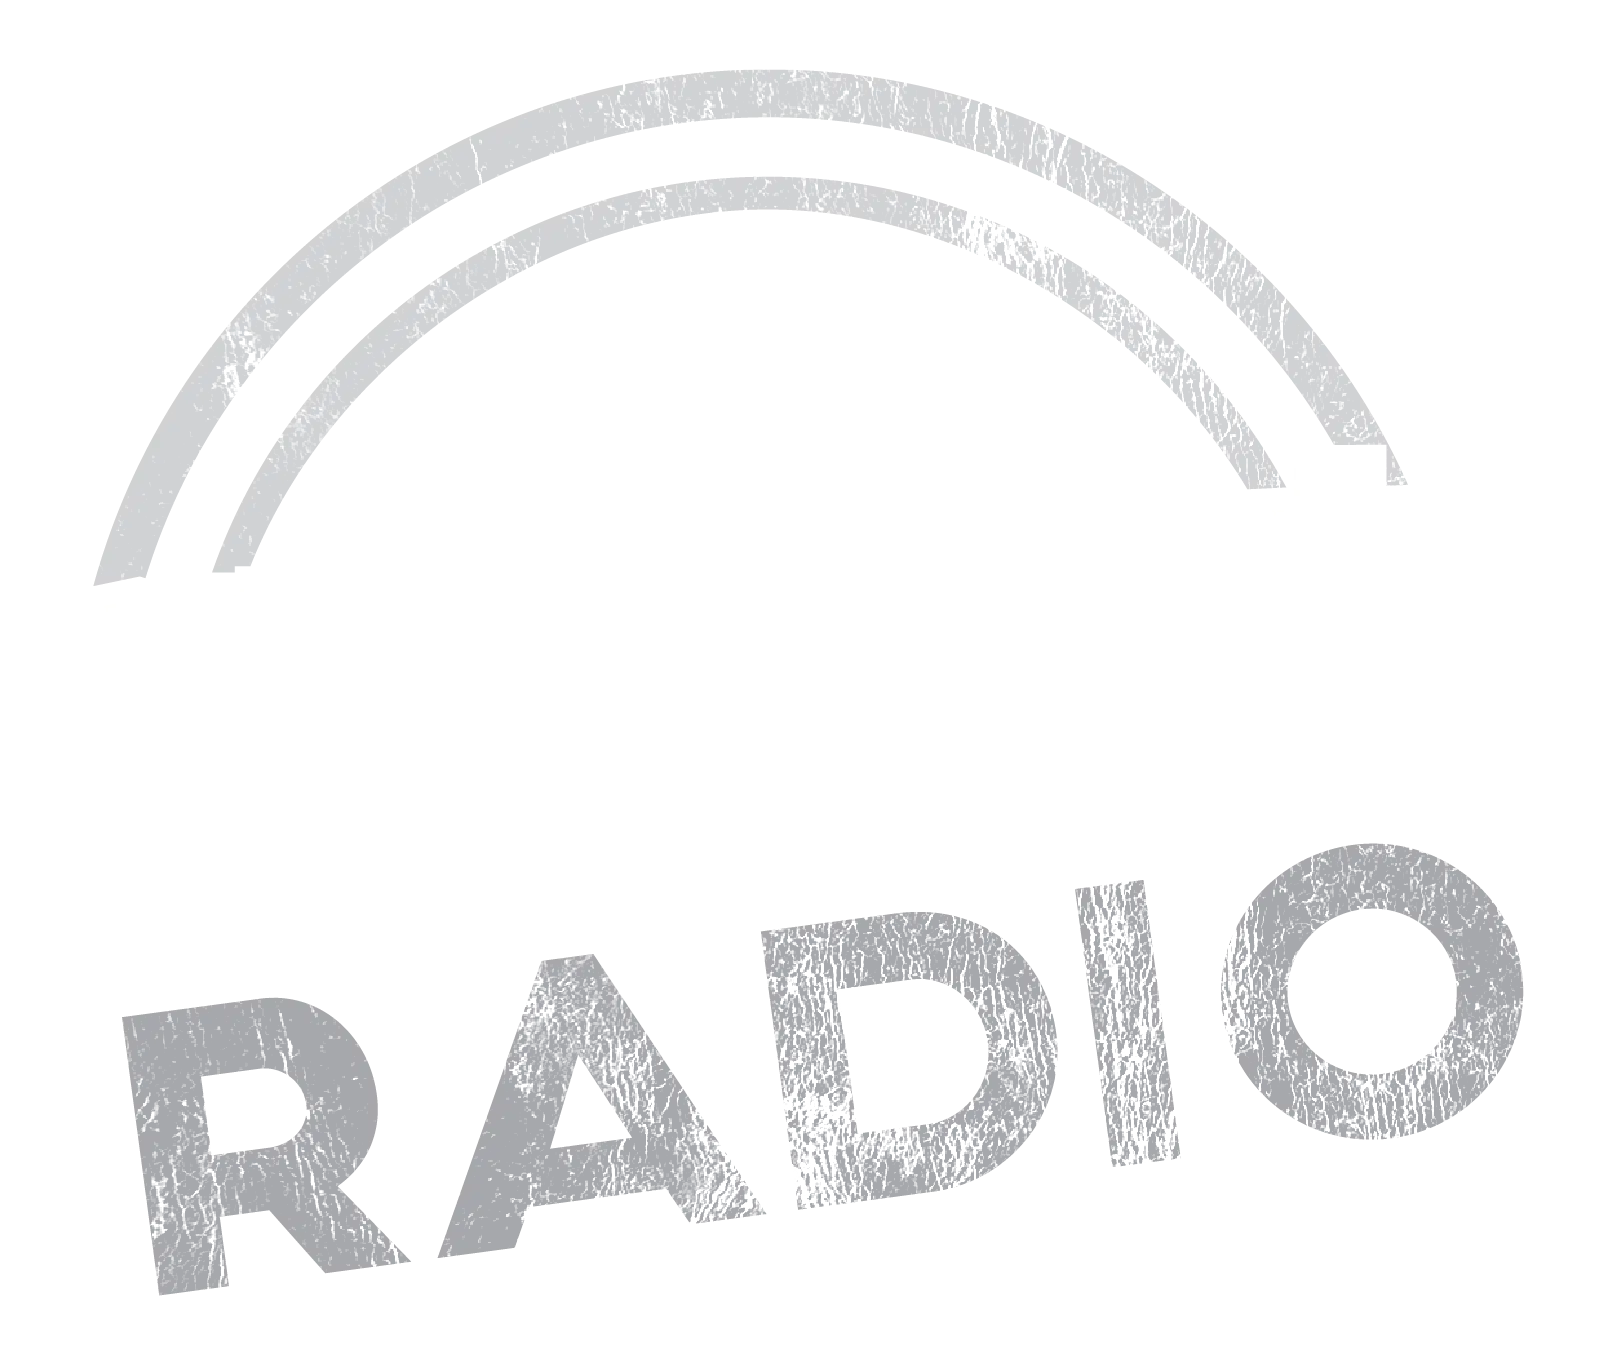 www.decaturradio.com